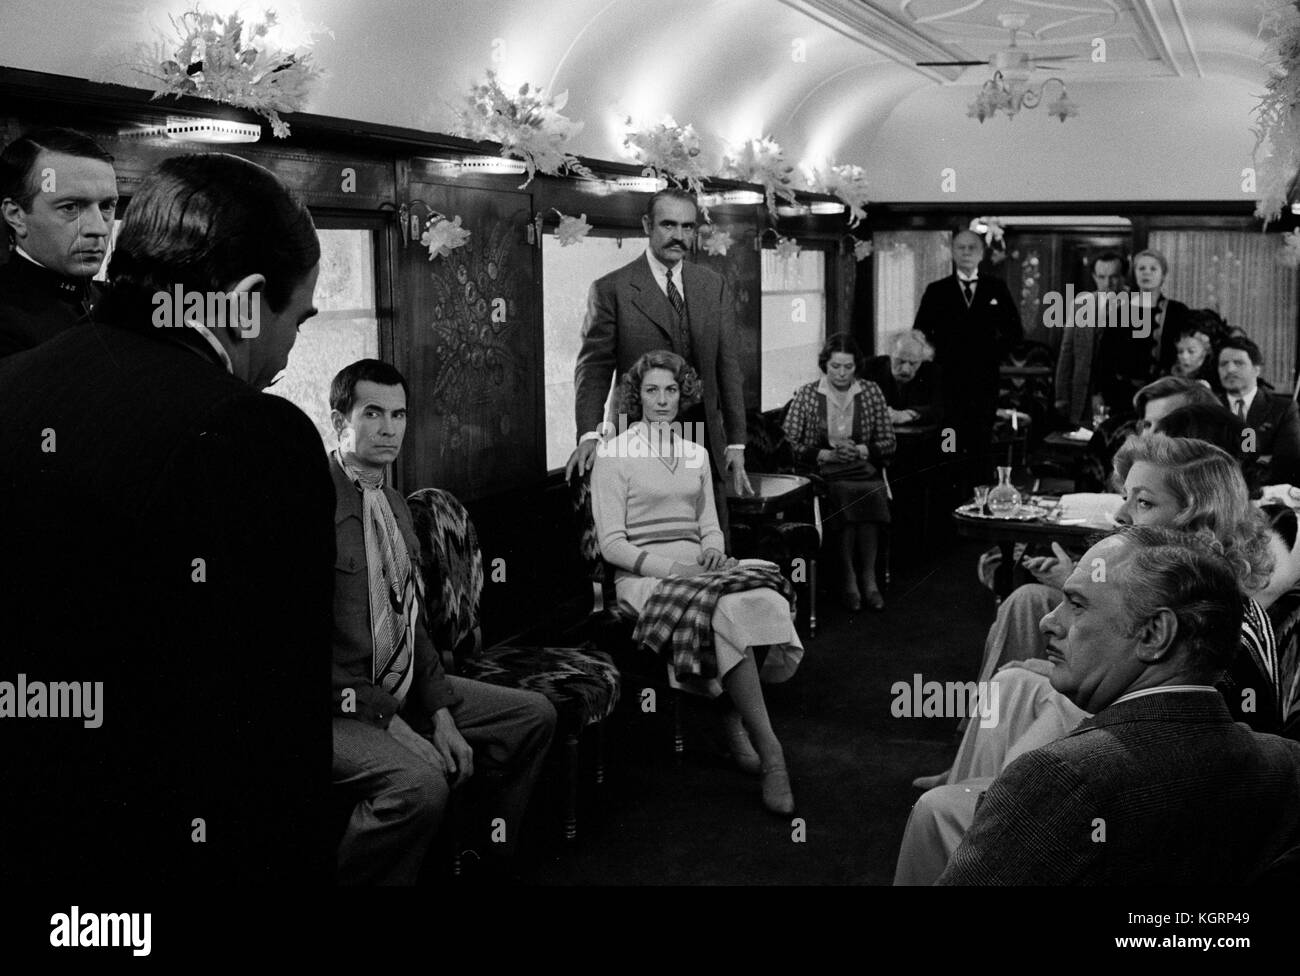 Asesinato en el Orient Express (1974), Albert Finney, Lauren Bacall , Ingrid Bergman , Vanessa Redgrave, Colin Blakely, Denis Quilley Fecha: 1974 Foto de stock